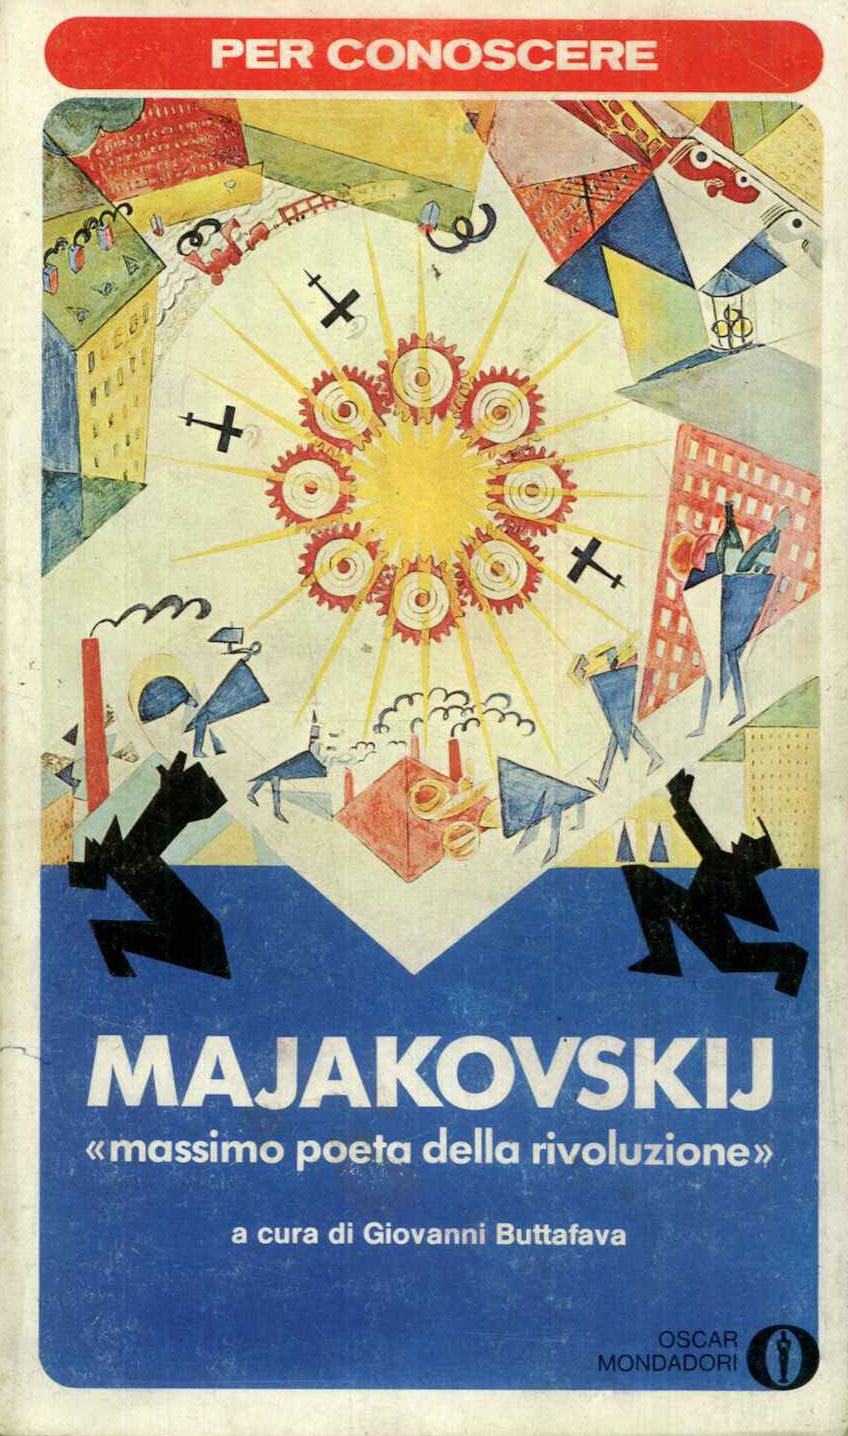 Per conoscere Majakovskij, massimo poeta della rivoluzione